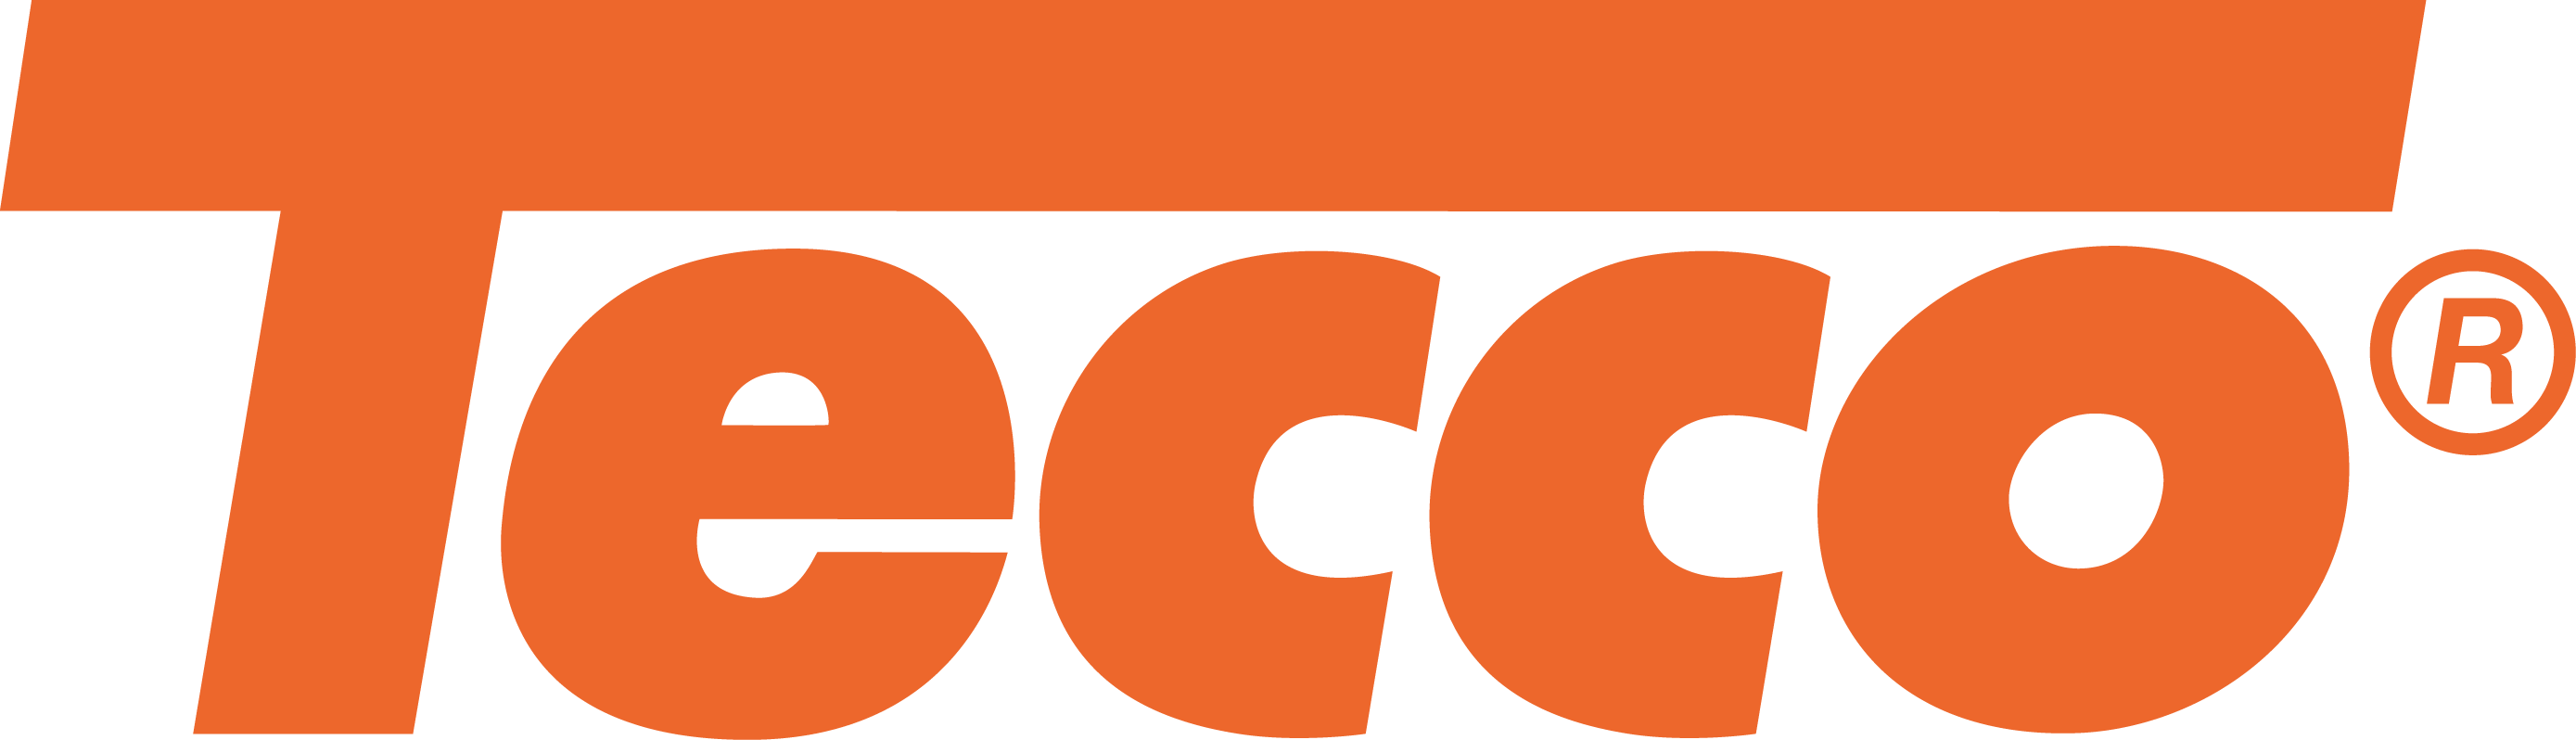 TECCO